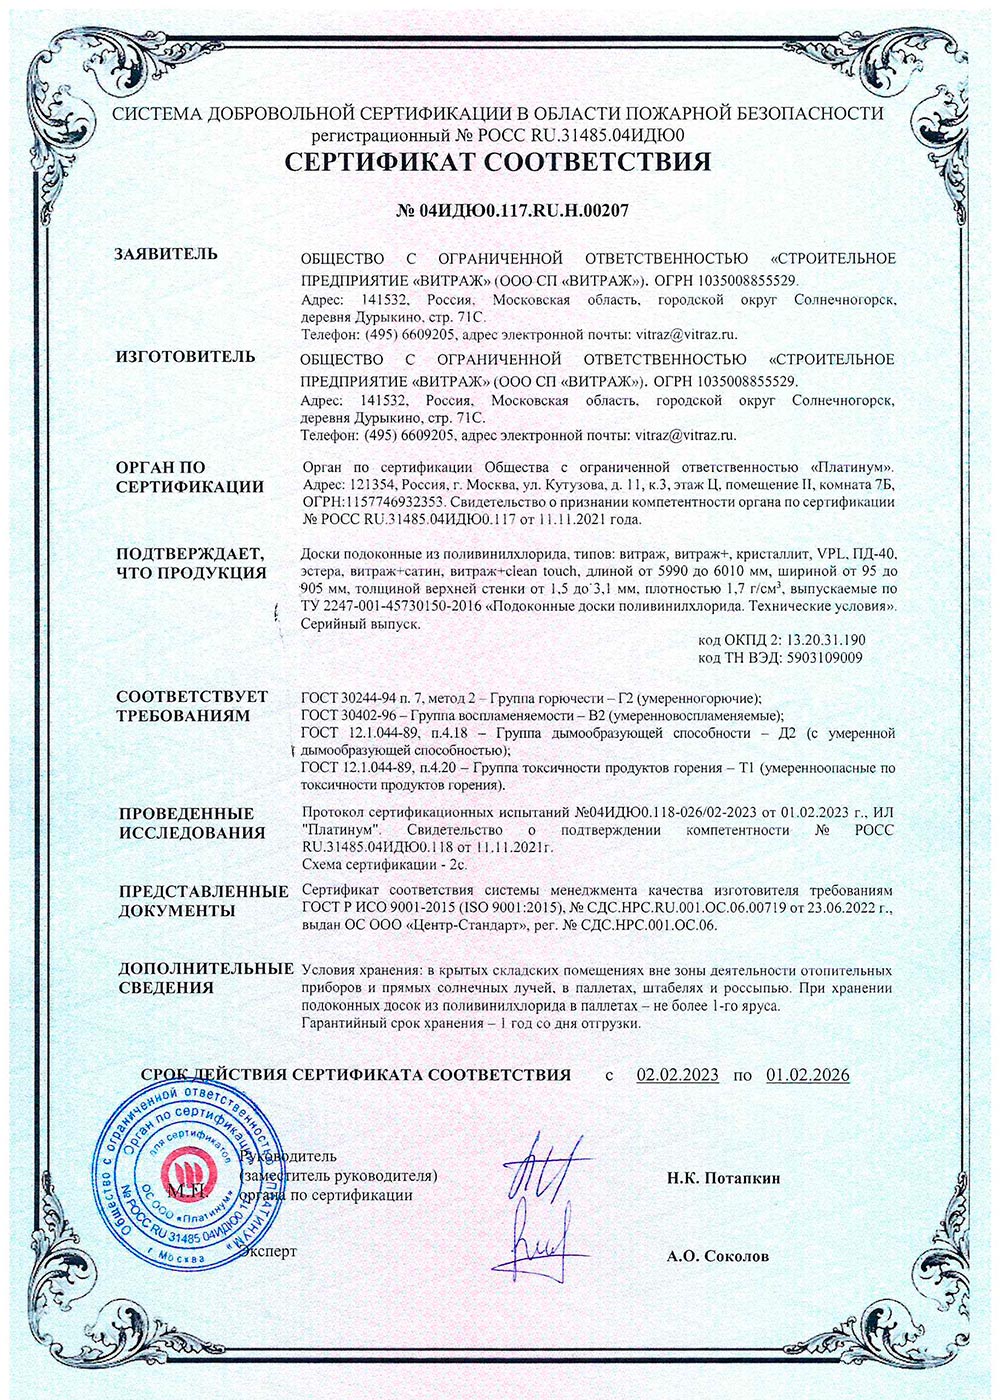 Кристаллит подоконники, пожарный сертификат, 01.02.2026